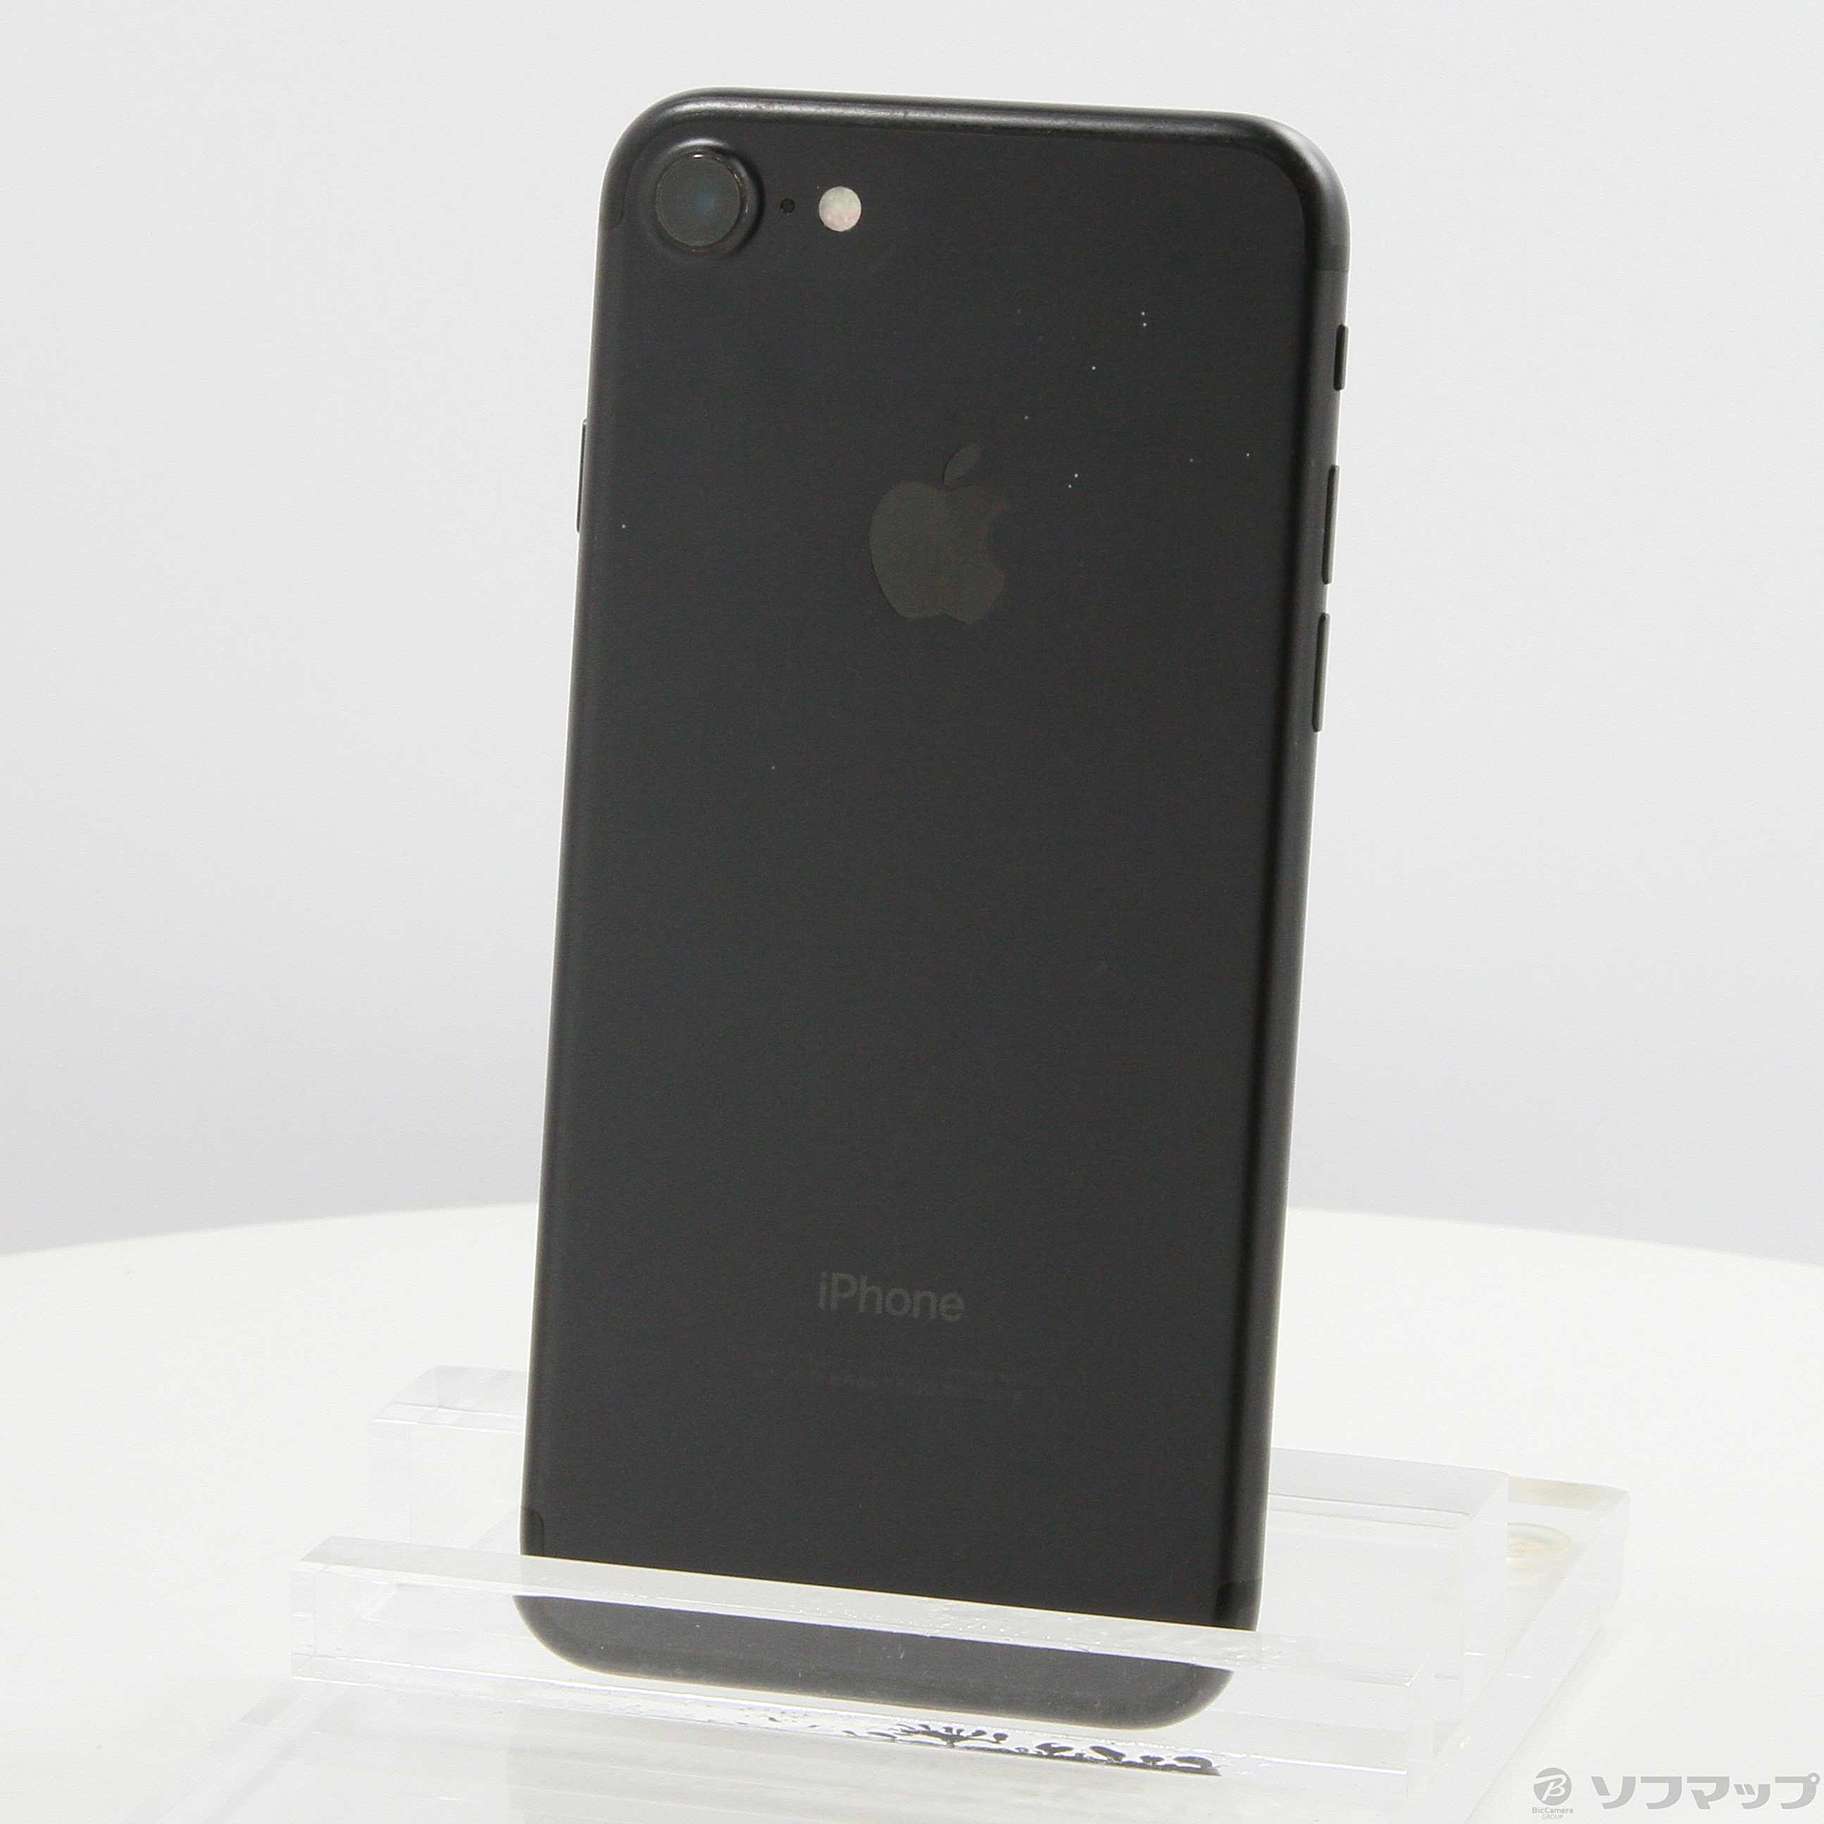 iPhone7 BLACK 128G 「値下げ不可」 - スマートフォン本体